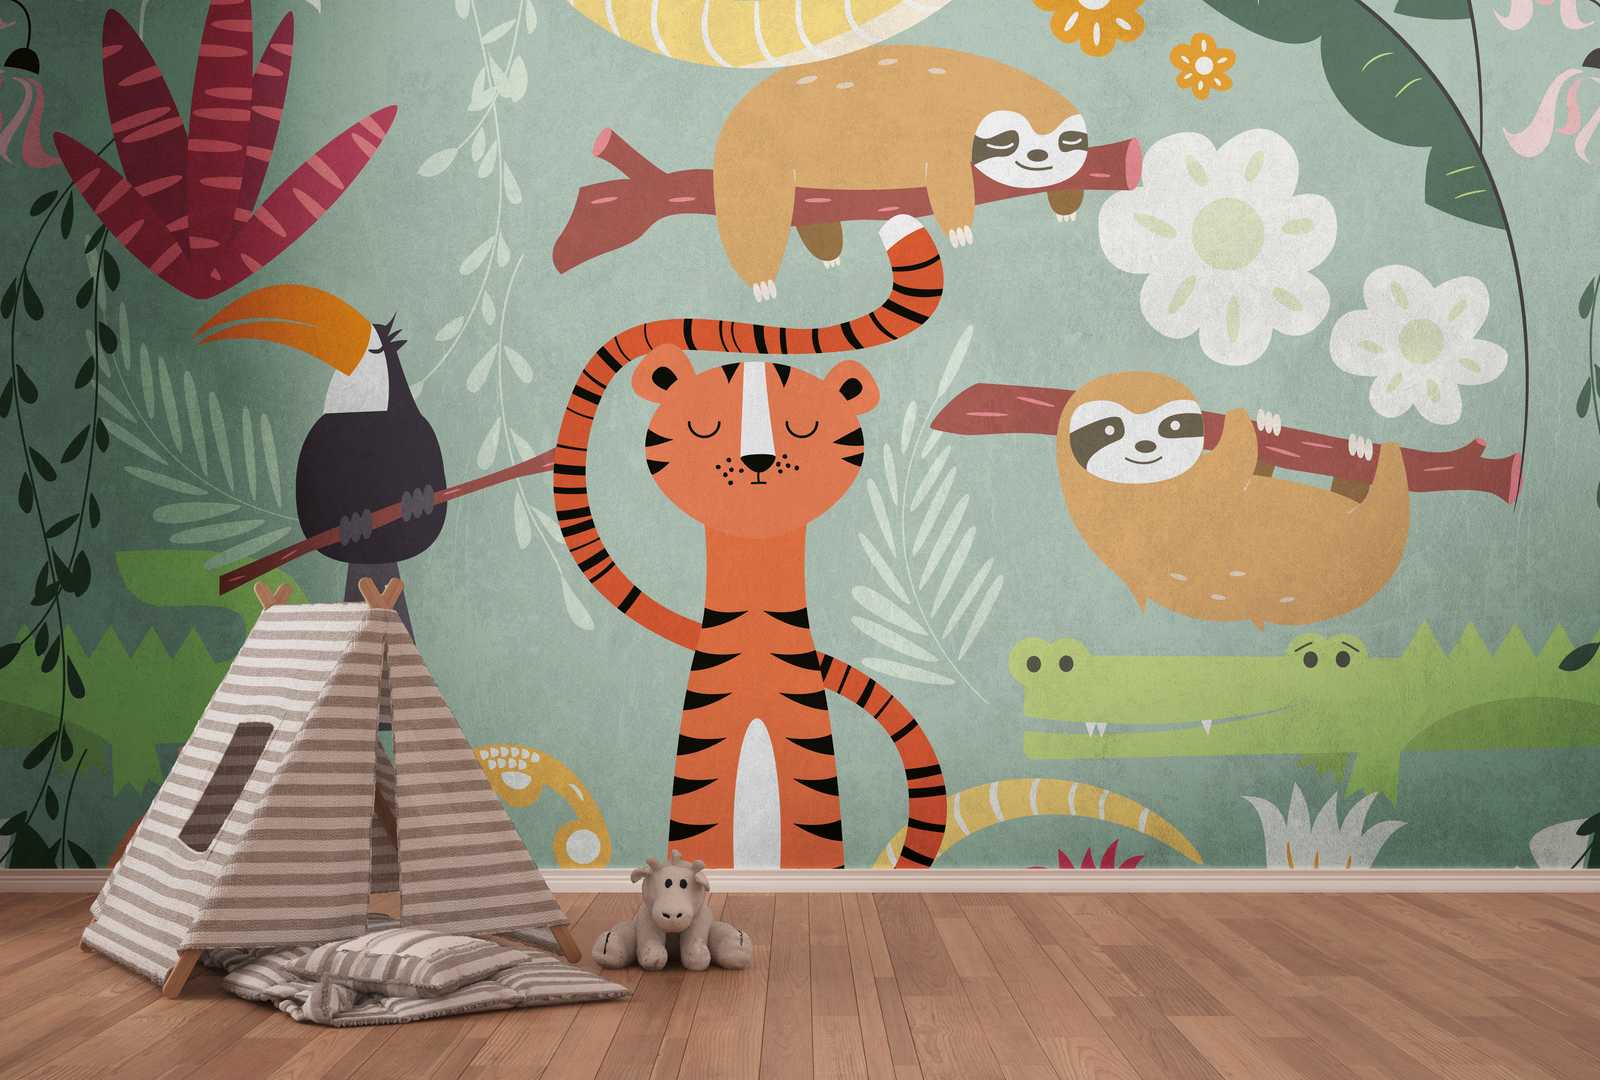             Wallpaper novelty - children motif wallpaper jungle animals comic style
        